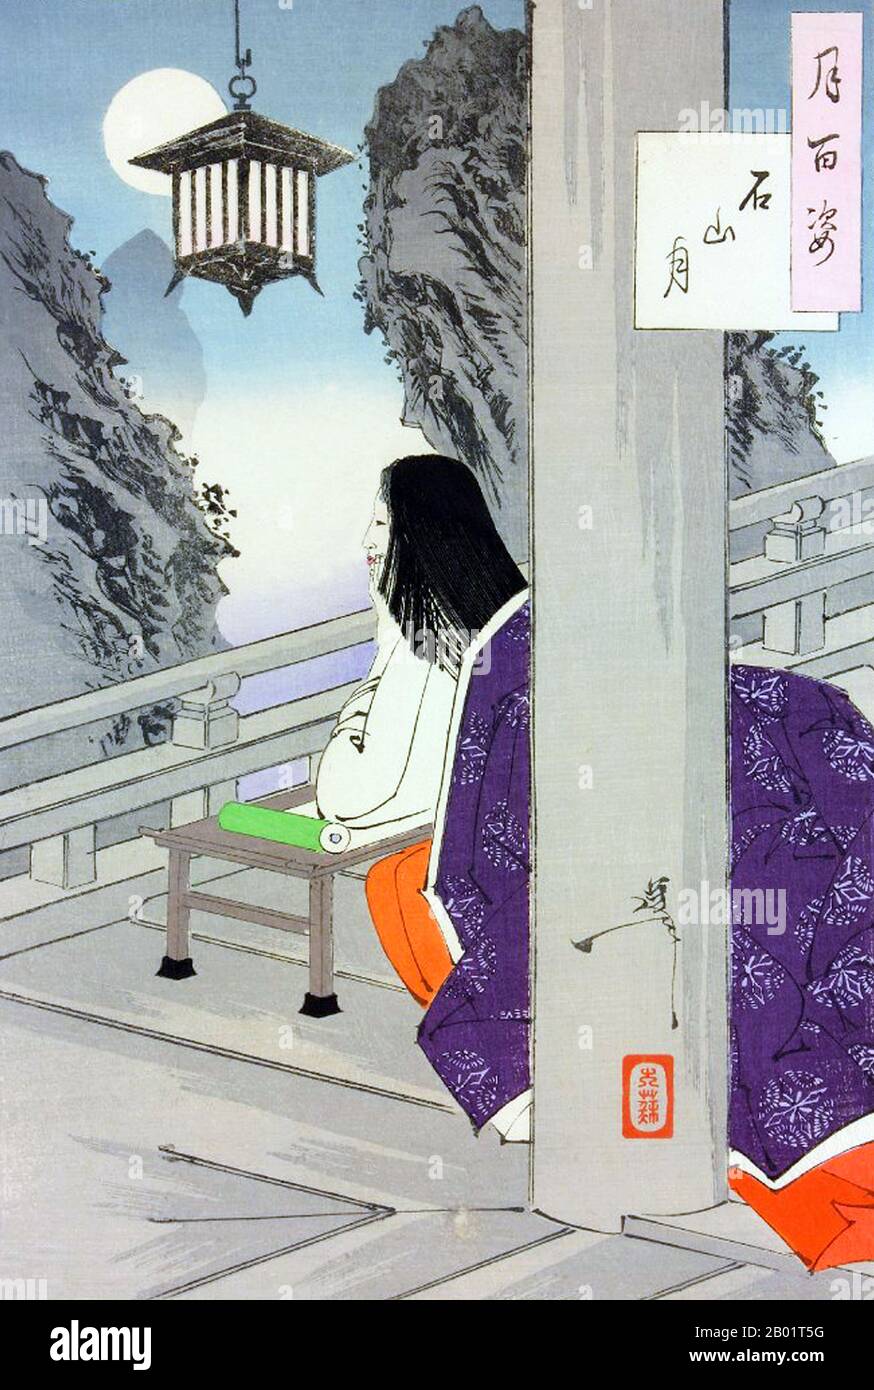 Japan: Ishiyama Moon. Lady Murasaki Shikibu (ca. 973-1025), die den Mond zur Inspiration betrachtet. Ukiyo-e-Holzschnitt aus der Serie „einhundert Aspekte des Mondes“ von Tsukioka Yoshitoshi (1839-1892), 1889. Murasaki Shikibu war eine japanische Schriftstellerin, Dichterin und Hofdame während der Heian-Zeit. Sie ist bekannt als die Autorin der Geschichte von Genji, die zwischen 1000 und 1012 auf Japanisch geschrieben wurde. Murasaki Shikibu ist ein Spitzname; ihr richtiger Name ist unbekannt, aber sie könnte Fujiwara Takako gewesen sein, die 1007 in einem Tagebuch des Hofes als kaiserliche Dame in Warten erwähnt wurde. Stockfoto